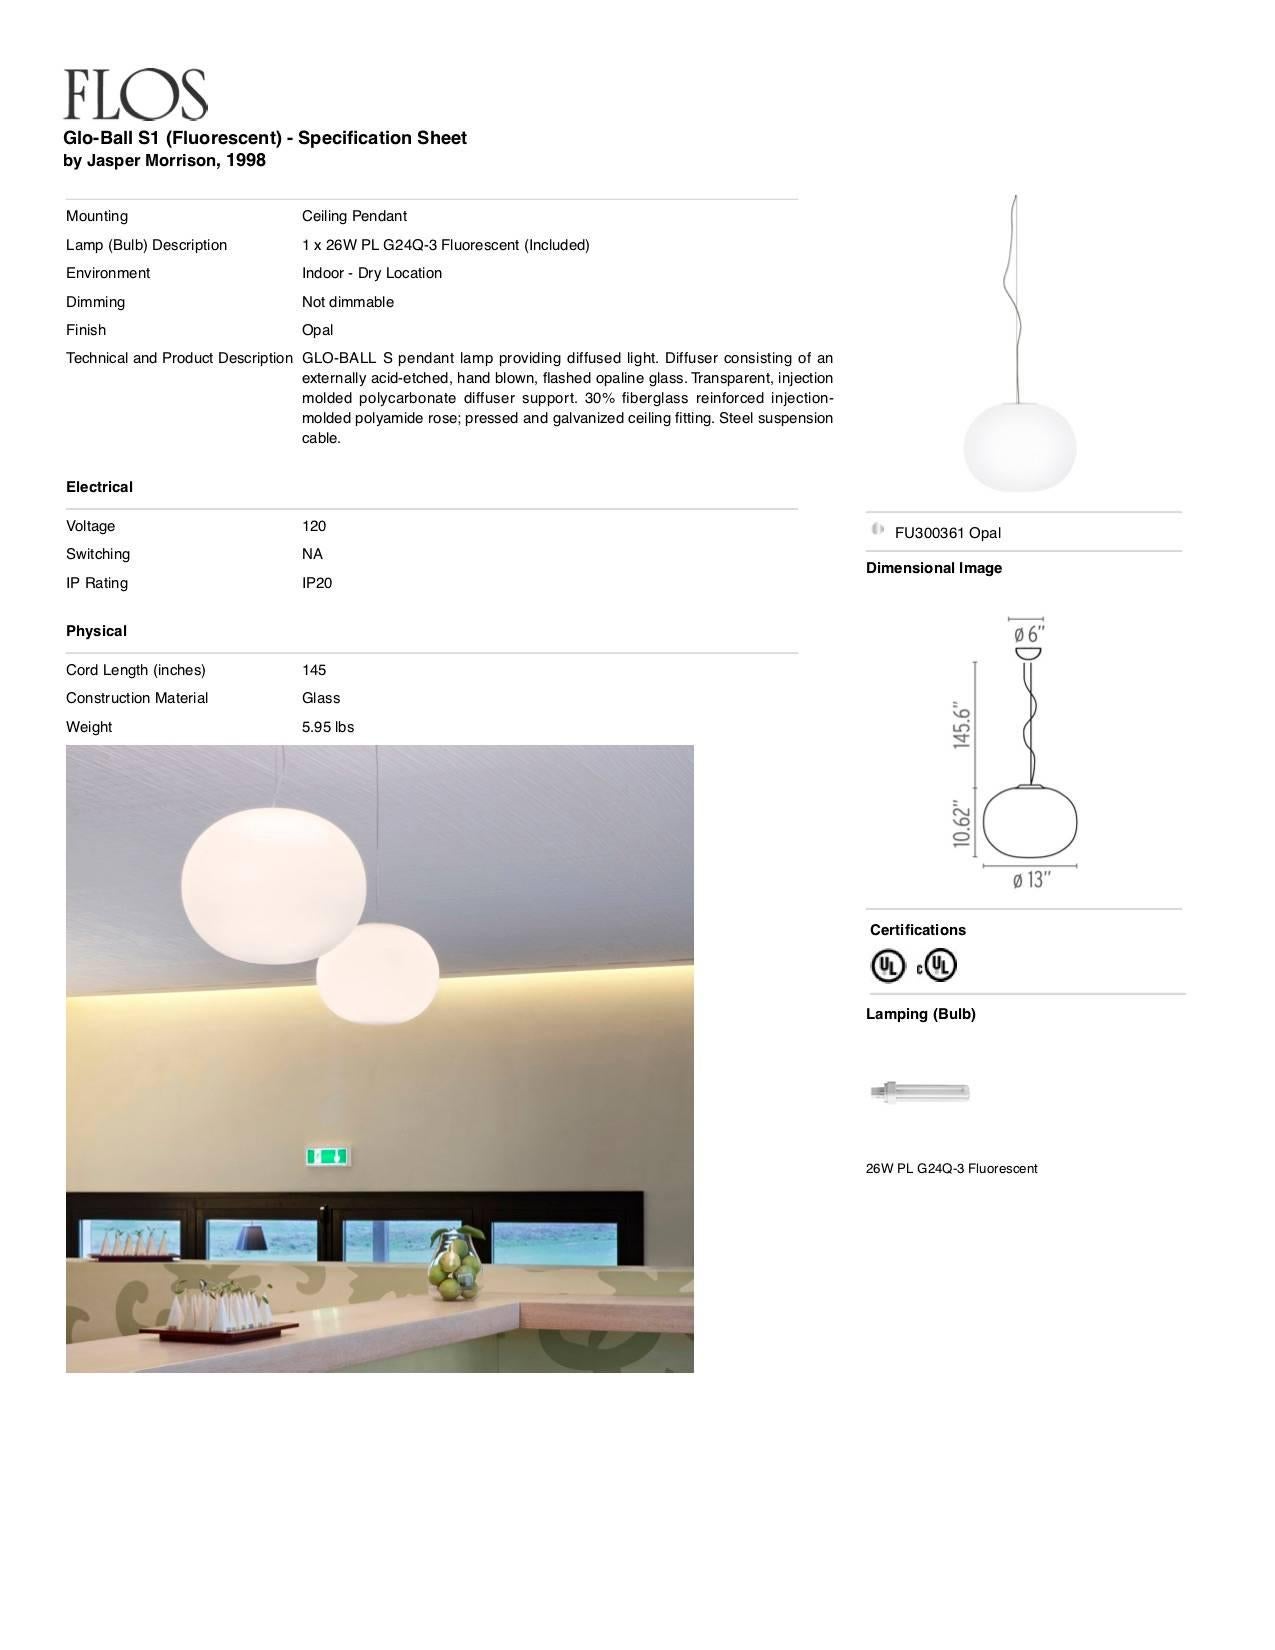 Italian Jasper Morrison Modern Sphere Glass Stainless Steel S1 Pendant Lamp for FLOS